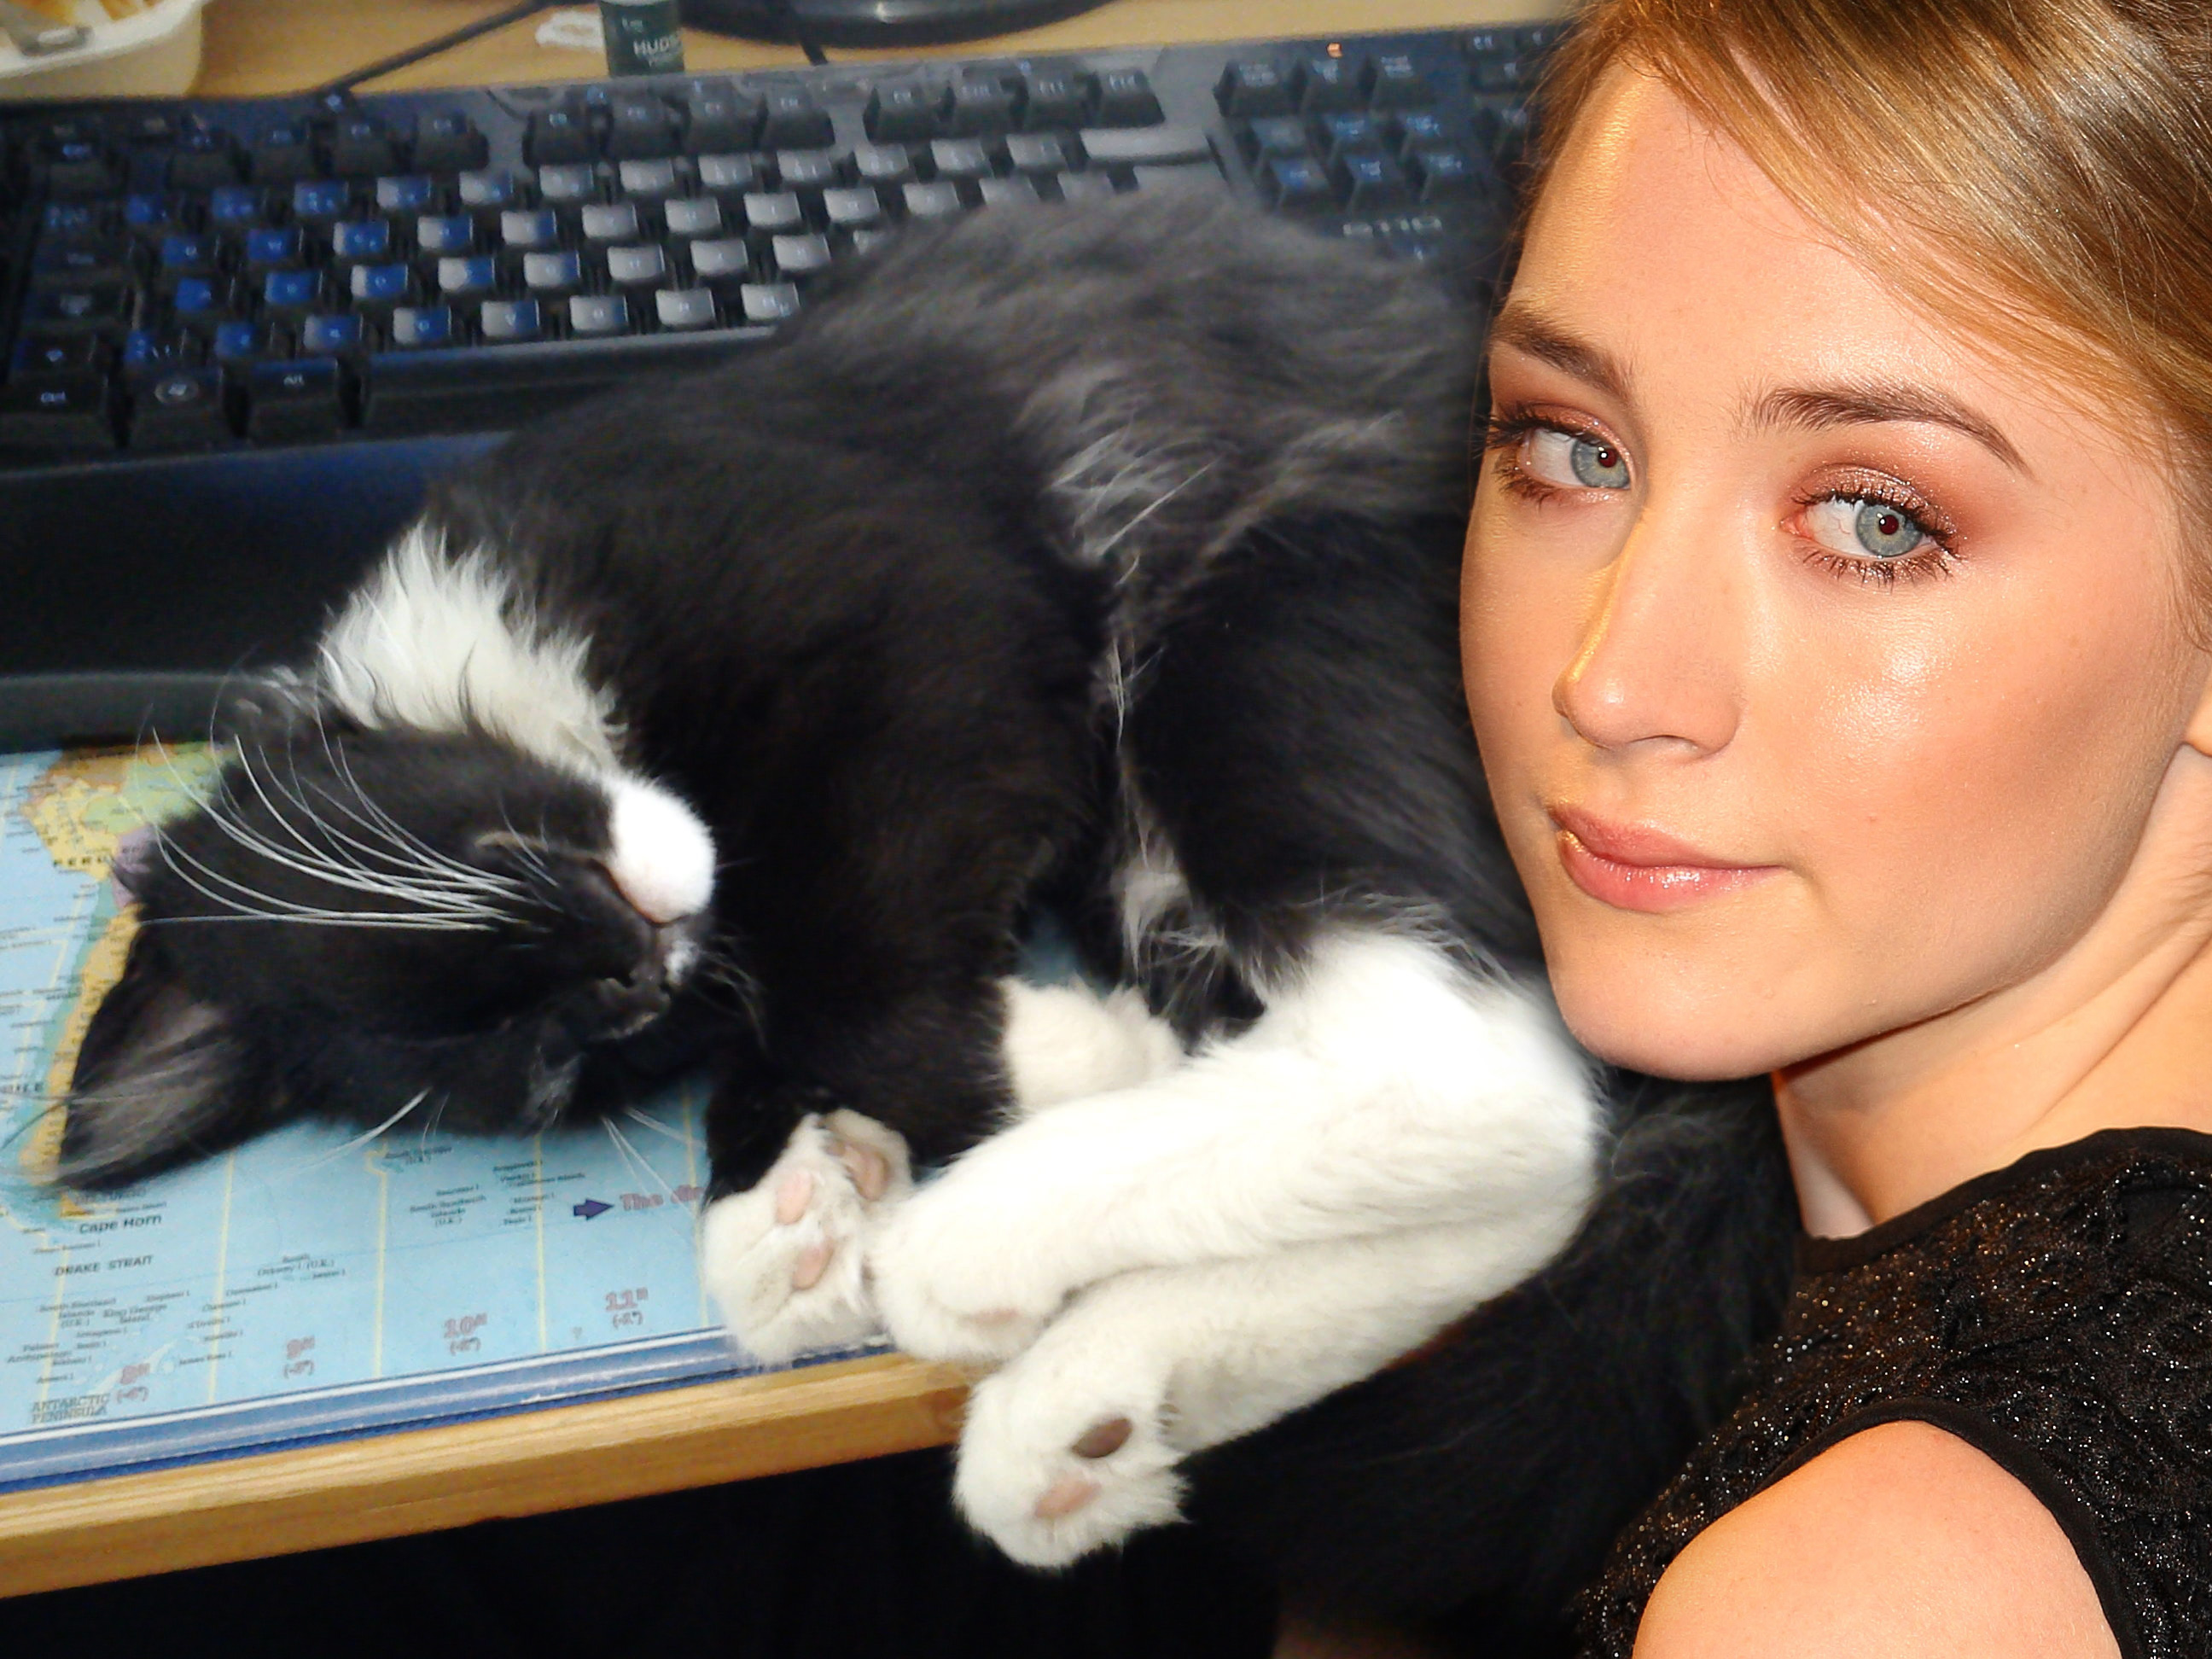 women, cats, actress, Saoirse Ronan - desktop wallpaper